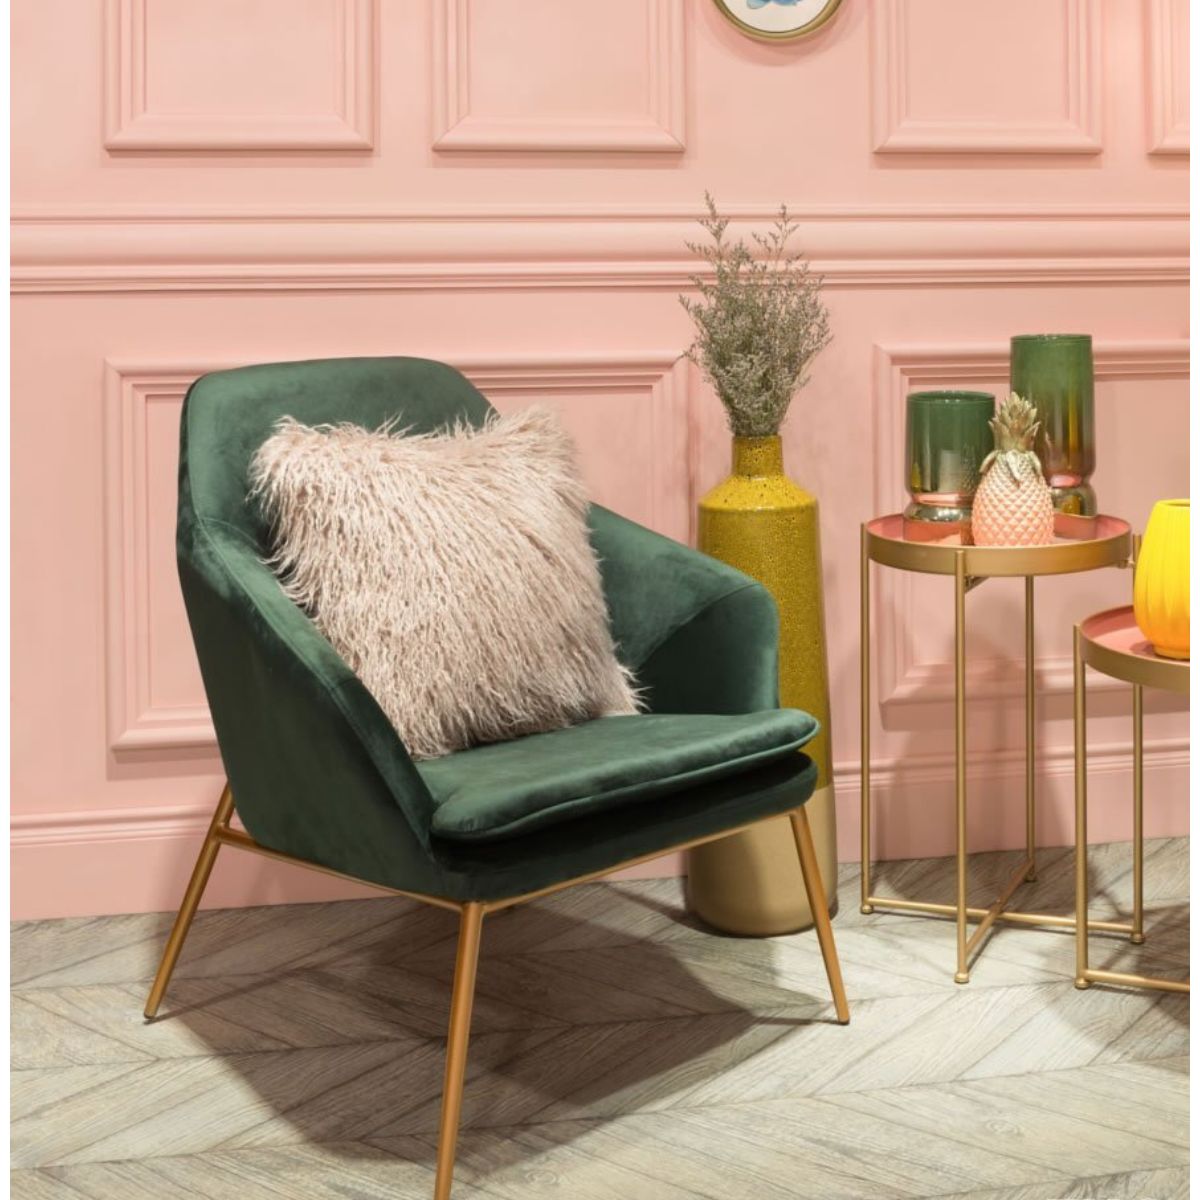 Sofia Green Velvet & Gold Arm Chair